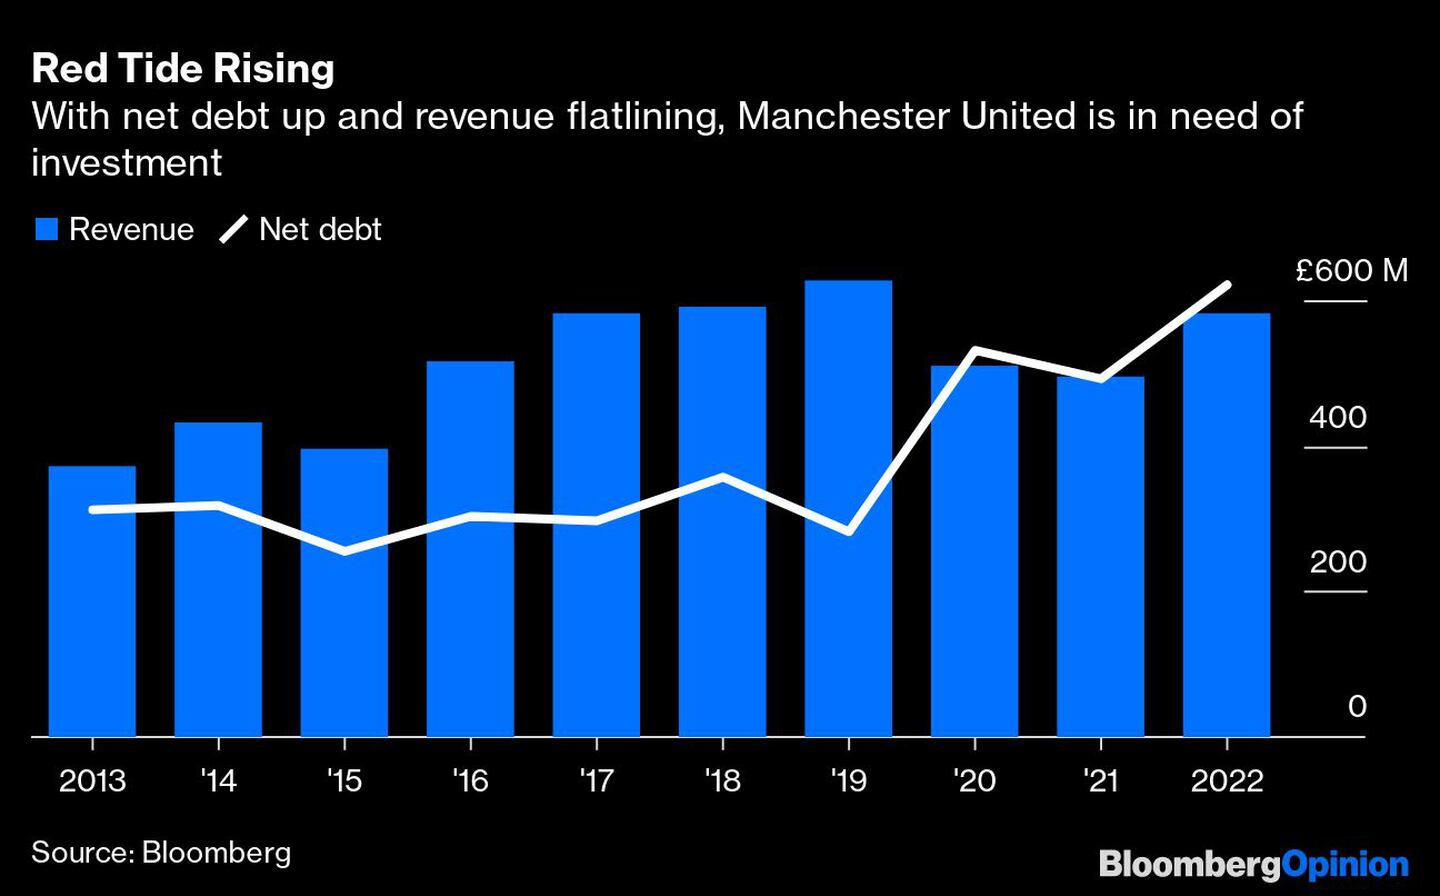 Con mayor deuda y menores ingresos, Manchester United necesita inversionesdfd